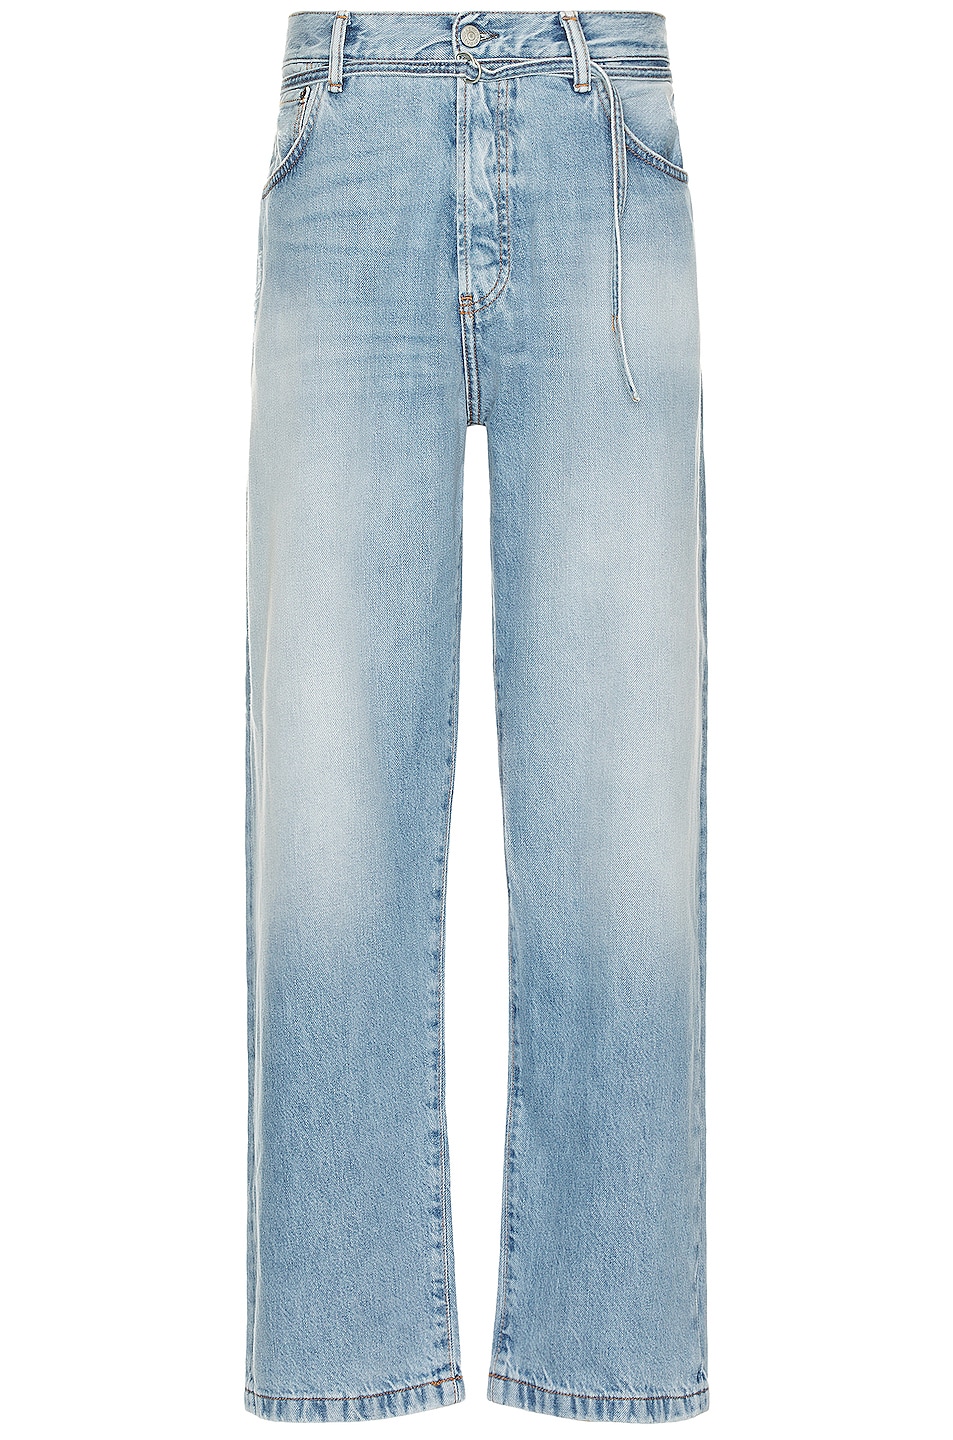 Acne Studios 1991 Toj Vintage Straight Denim Jean In Light Blue in ...